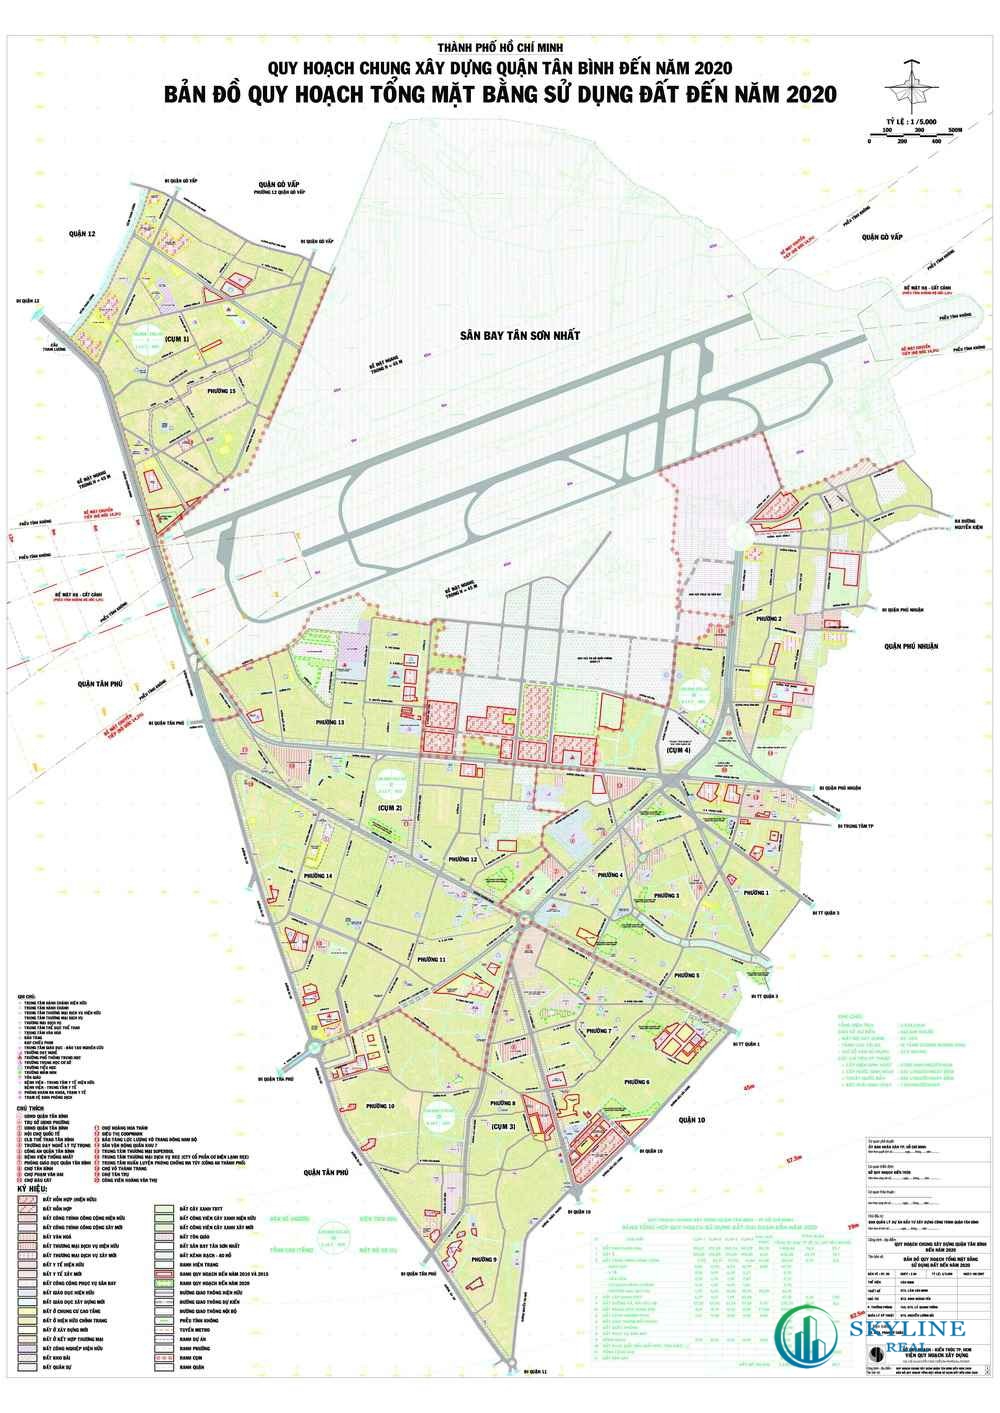 Bản đồ quy hoạch sử dụng đất quận Tân Bình